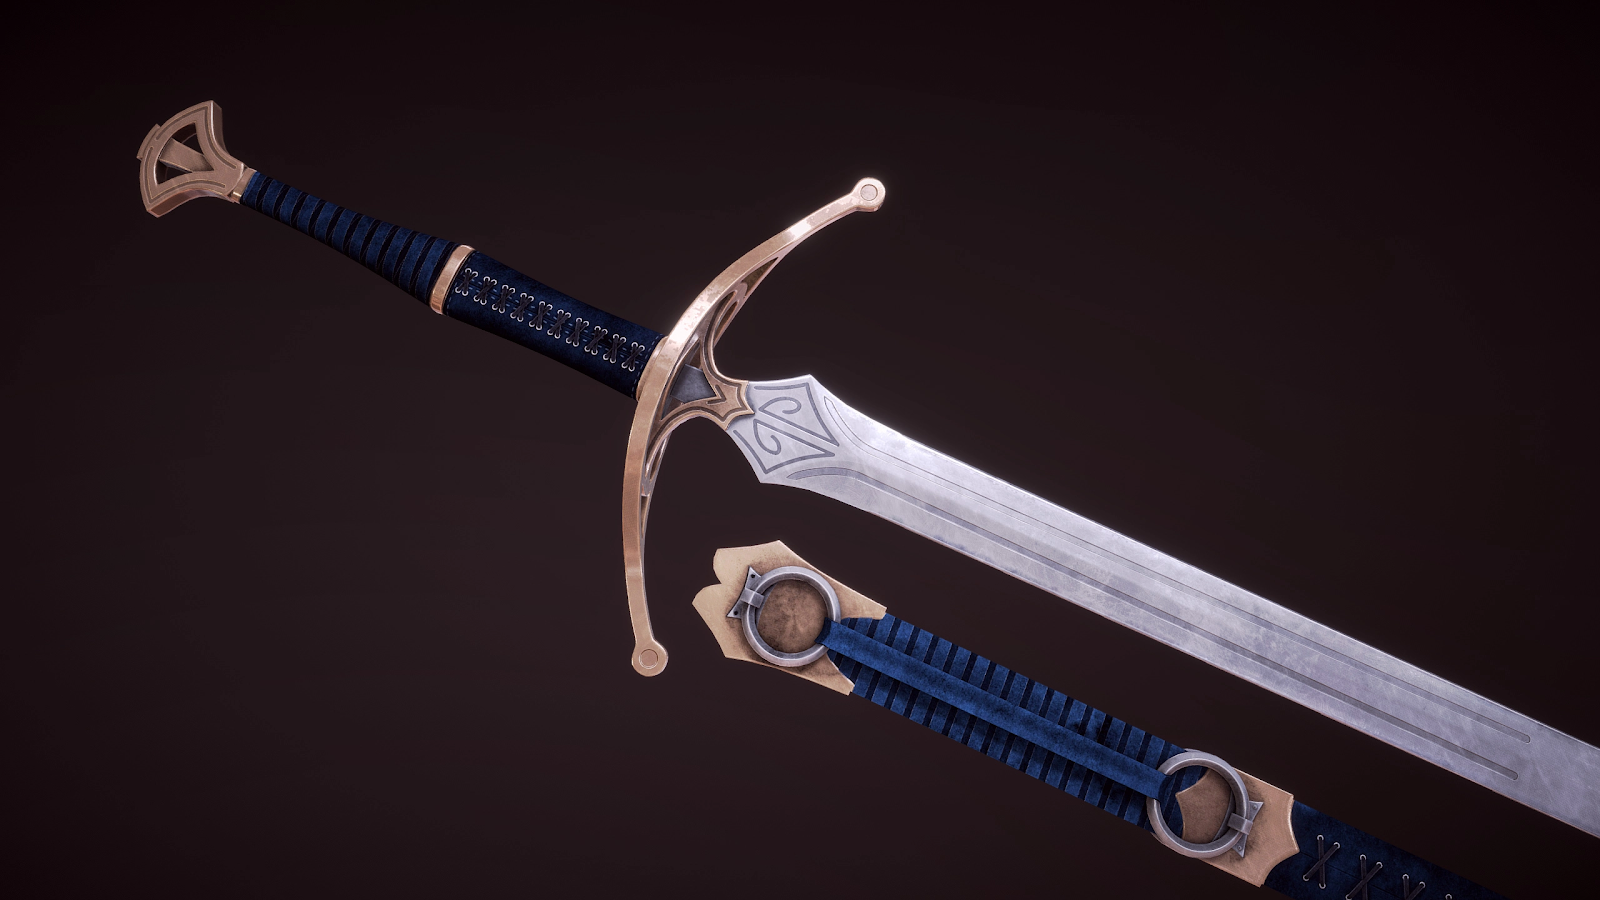 best sword in skyrim